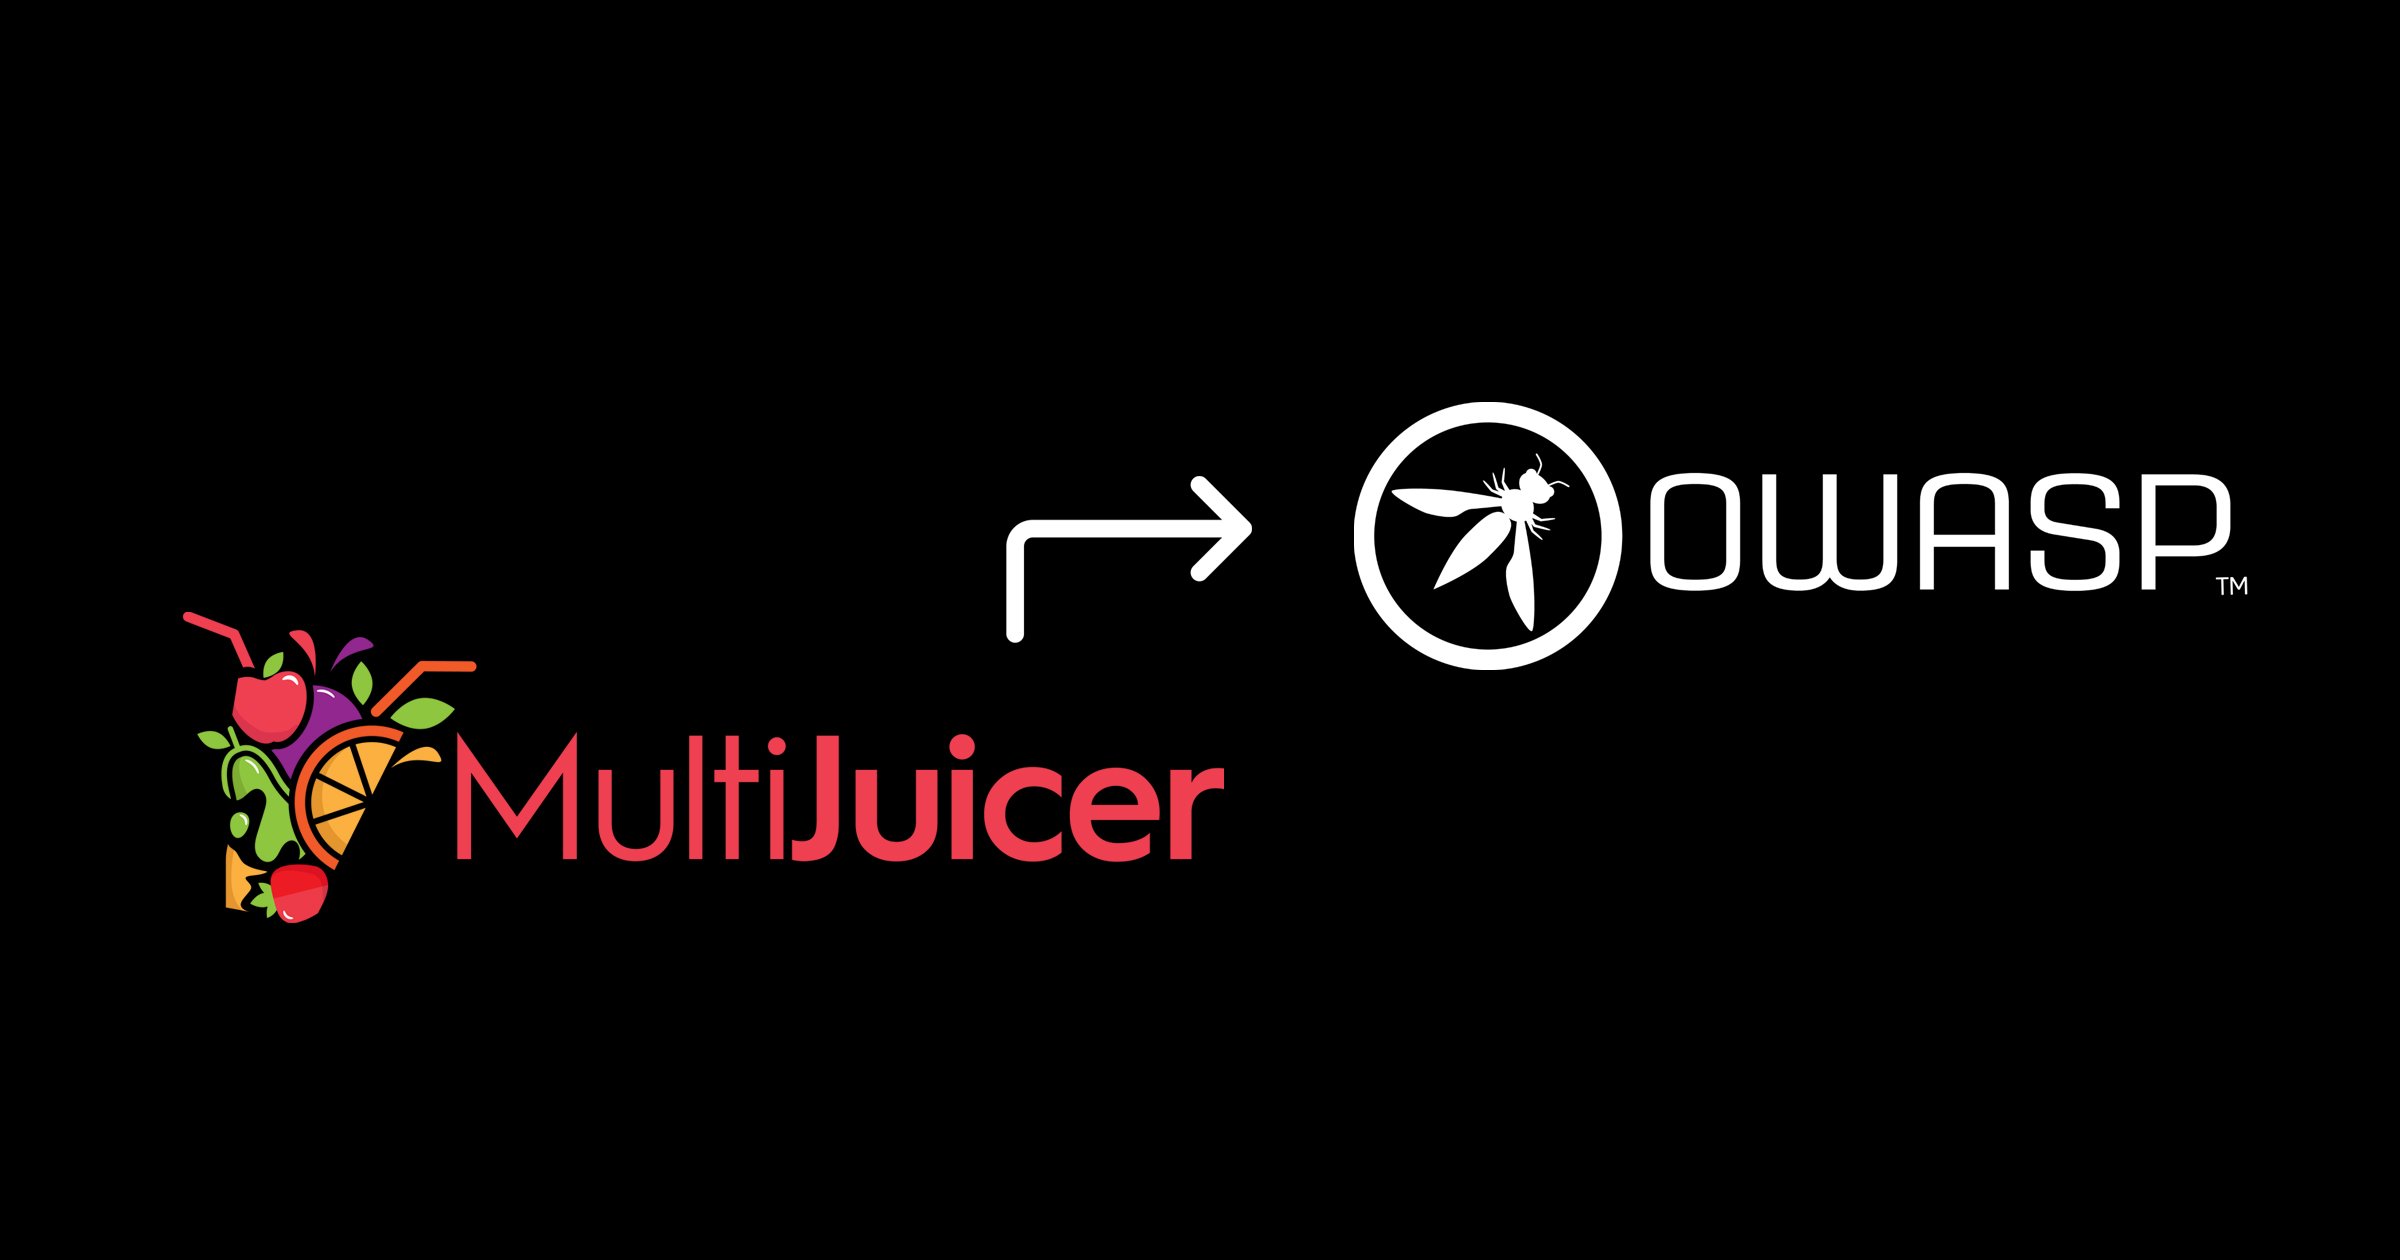 We donated MultiJuicer to OWASP